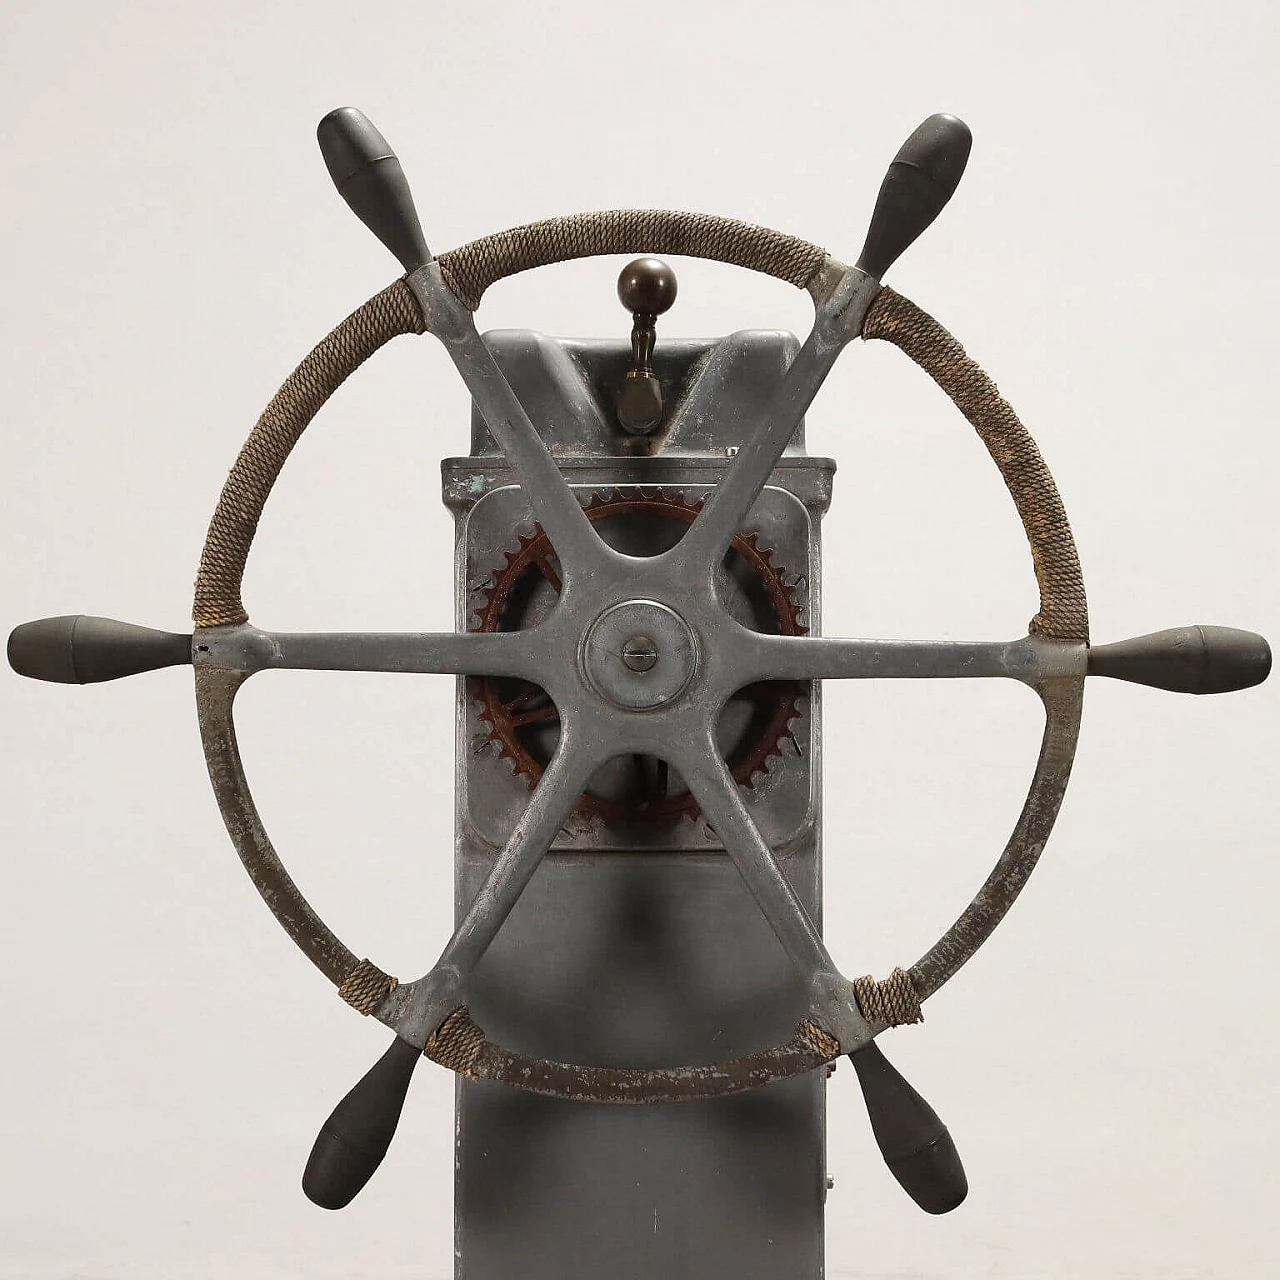 Sperry Gyroscope Company ship's wheel 3